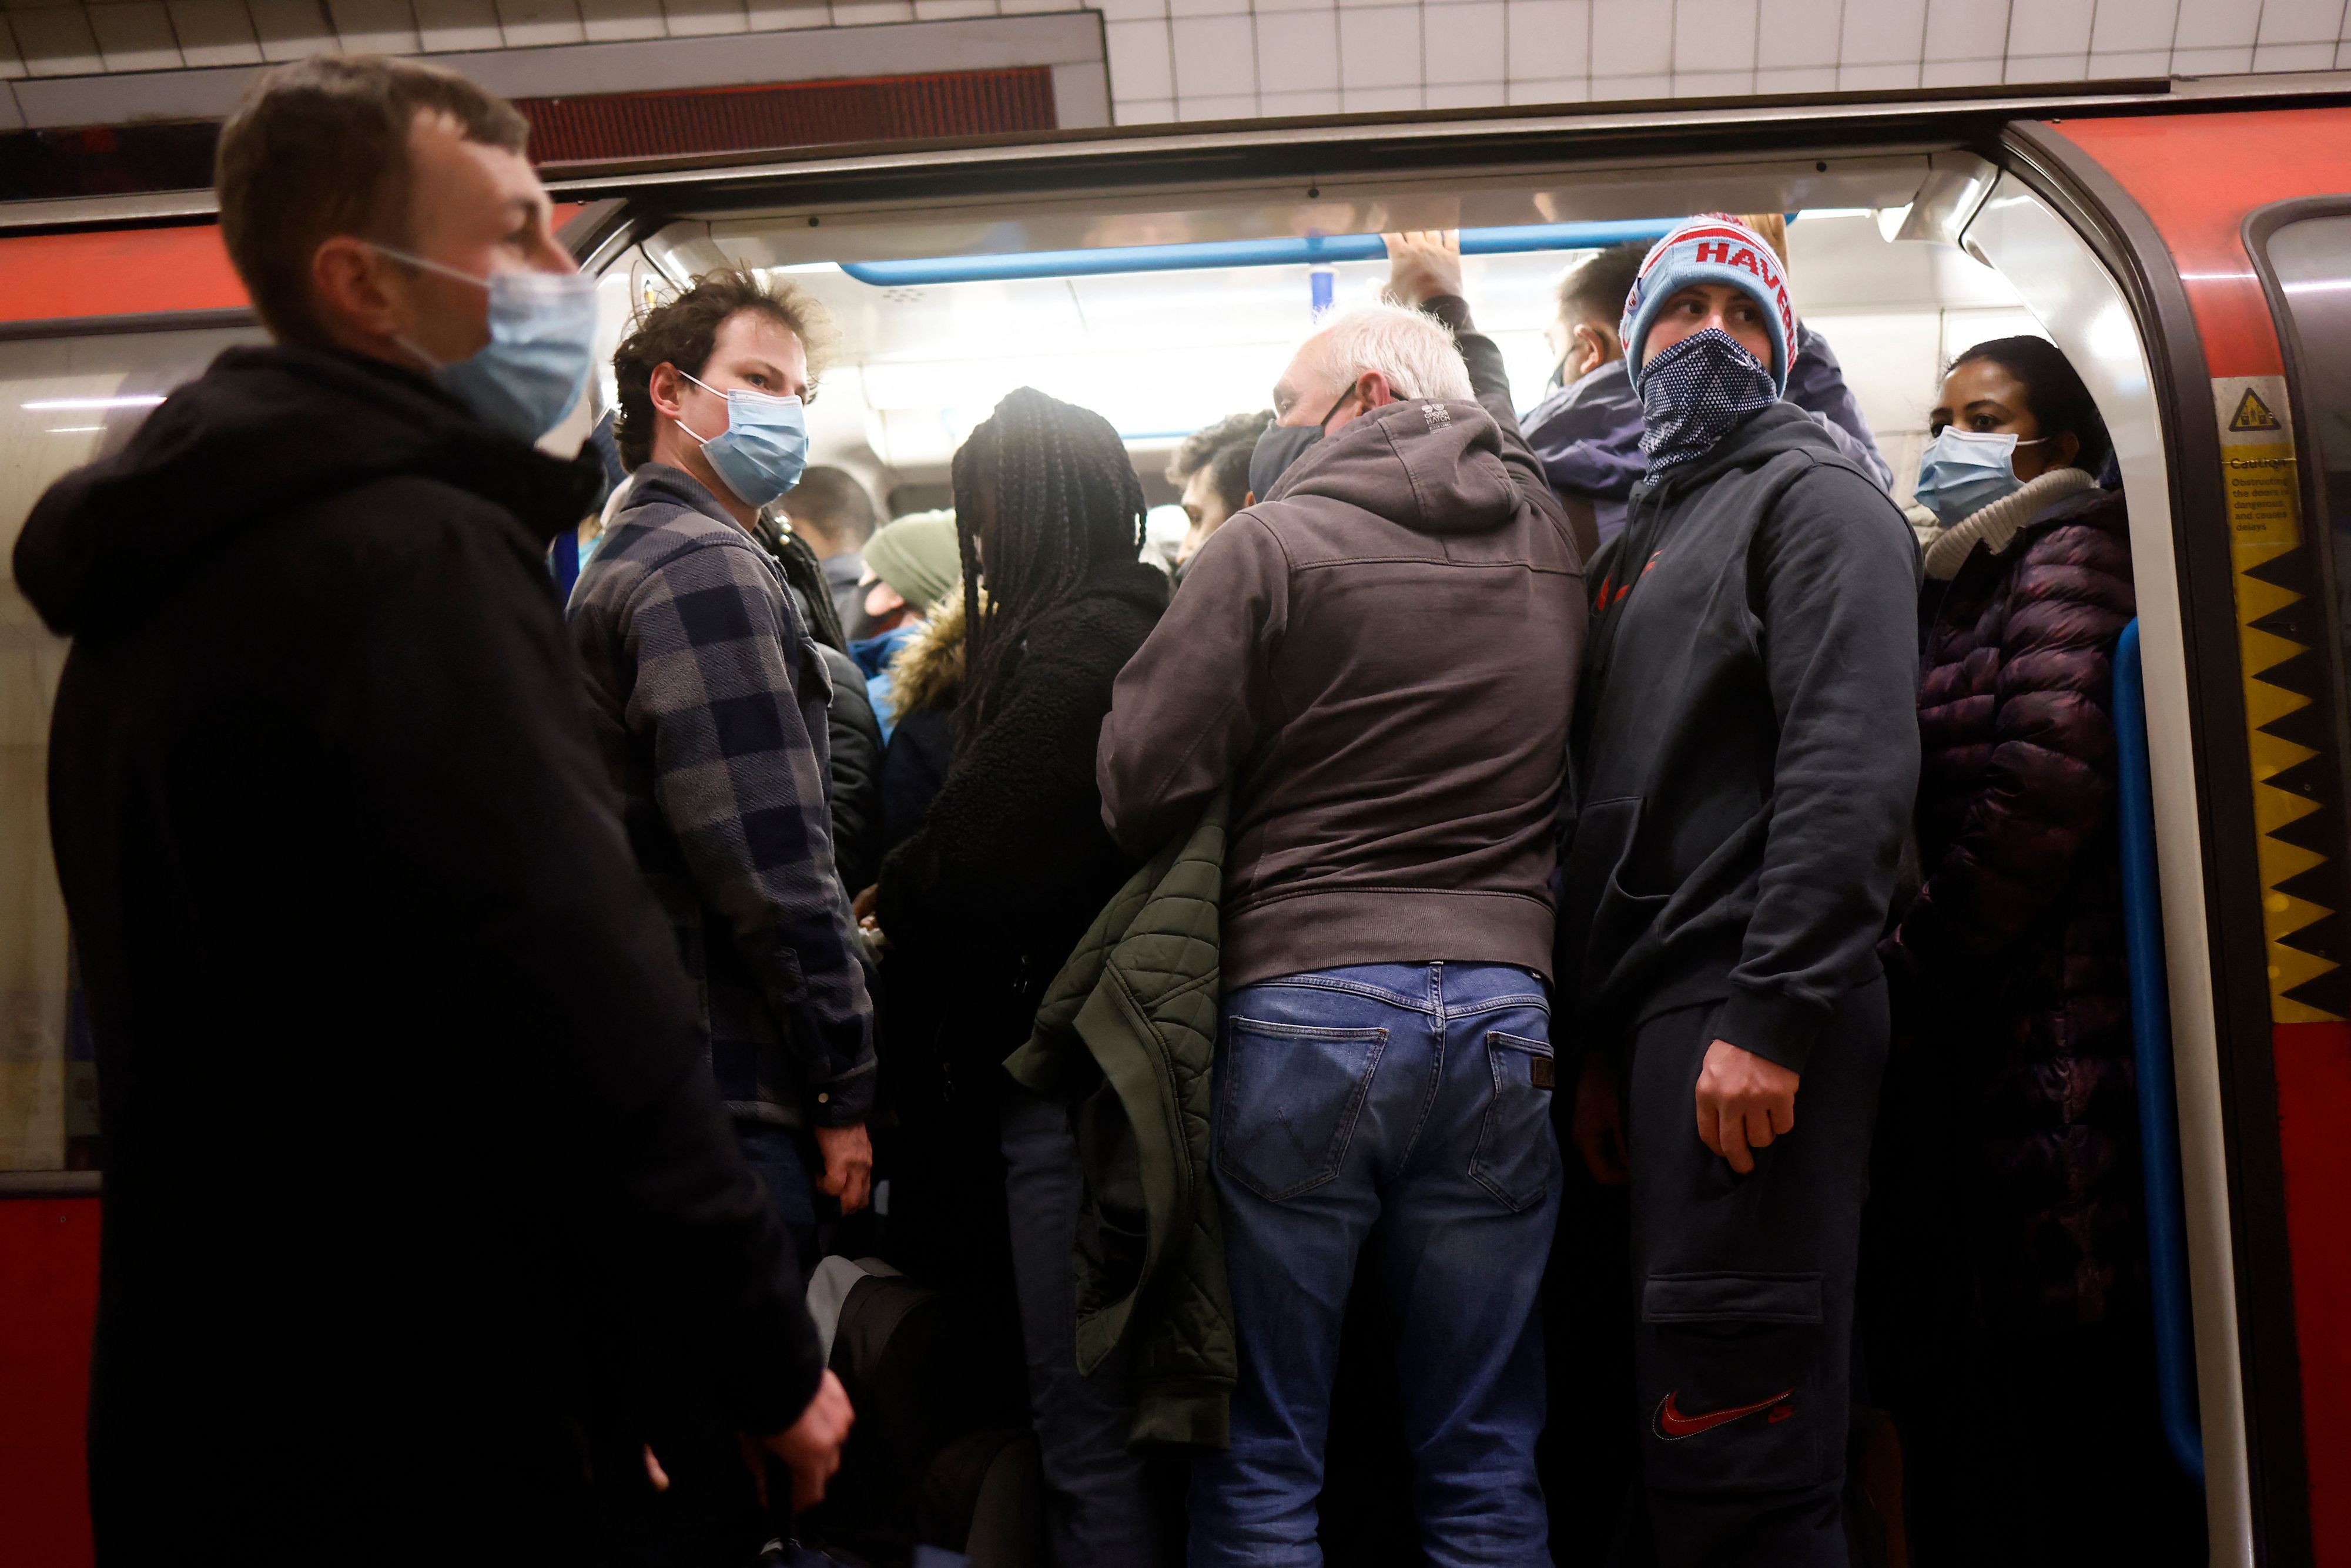 London to lift mandatory mask rules on tube, Sadiq Khan announces | The ...